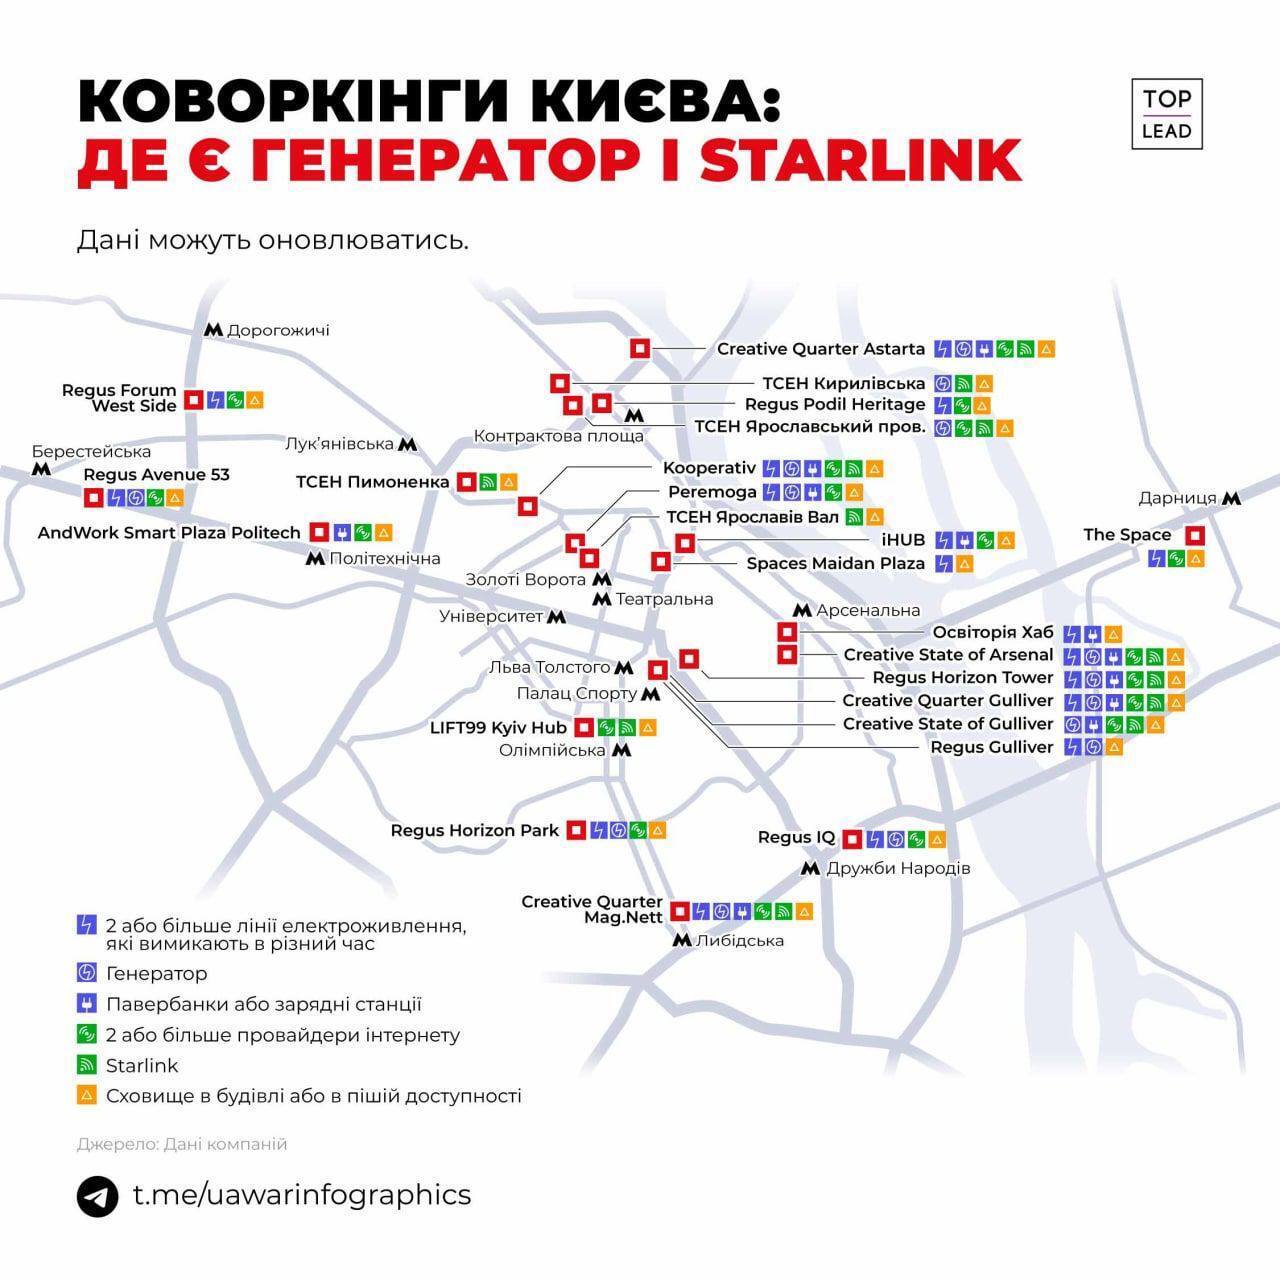 В Киеве появилась карта коворкингов, где можно поработать во время отключений (фото)